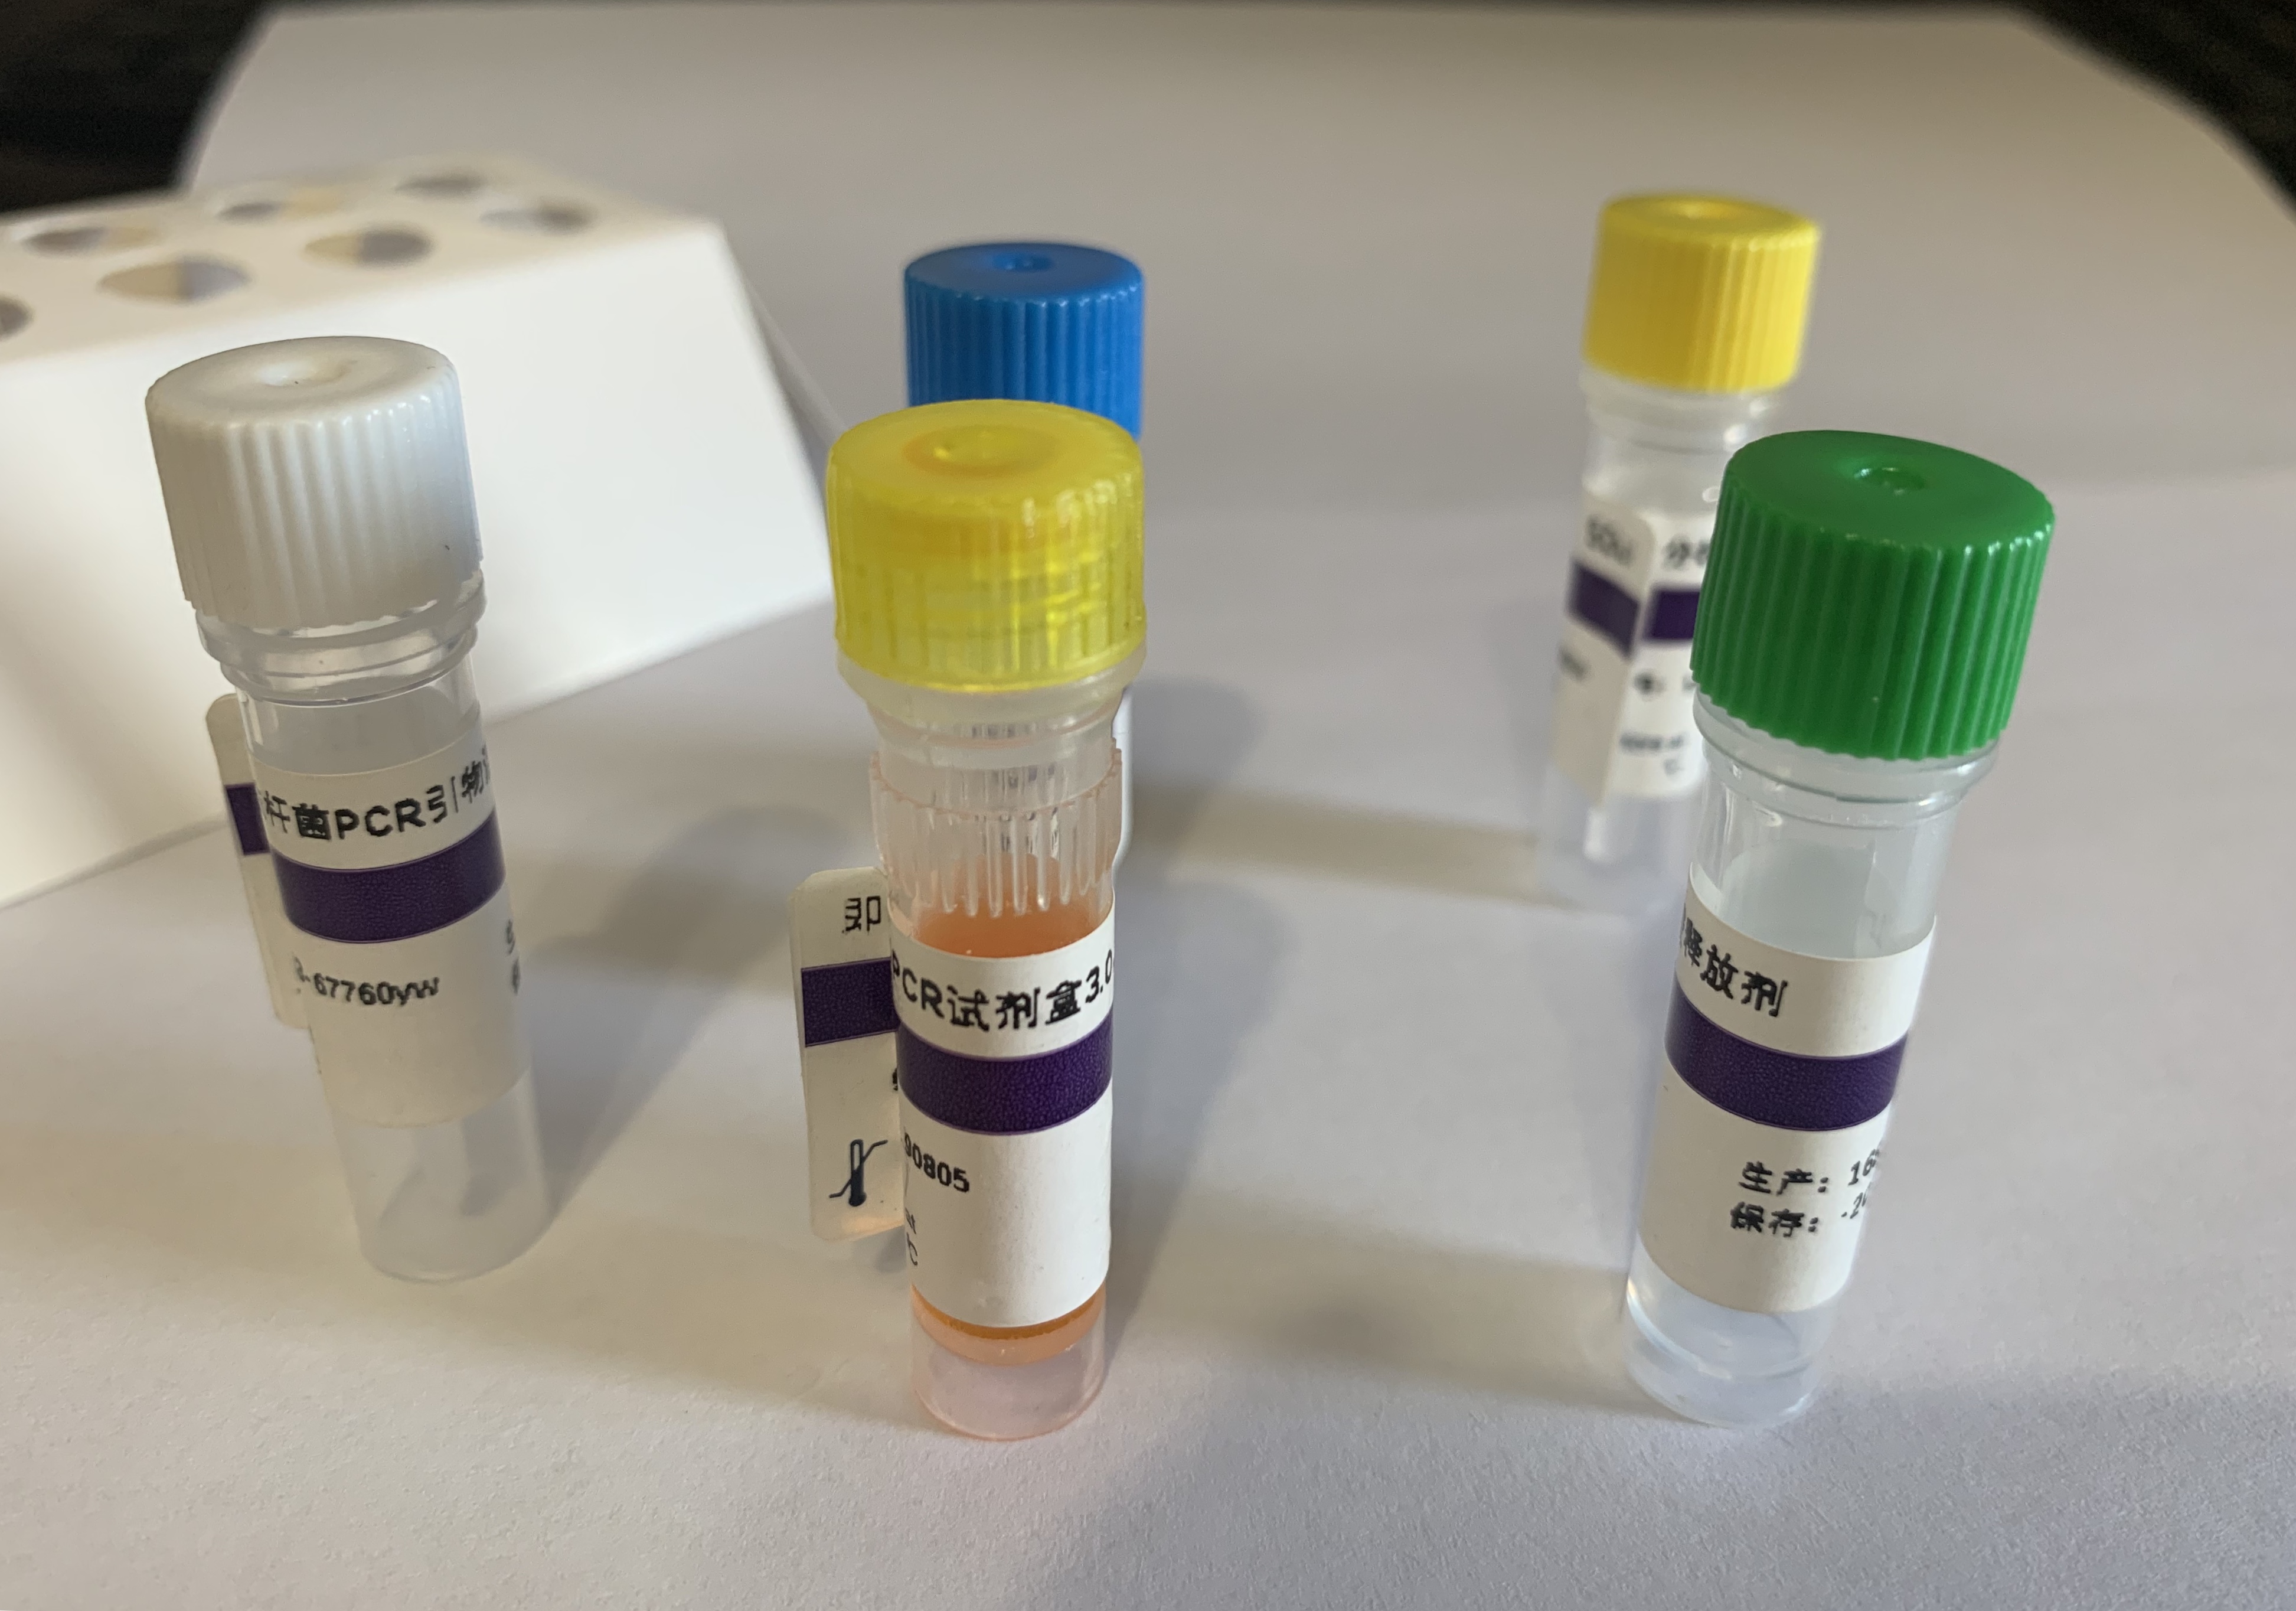 泌尿道致病性大肠杆菌(UPEC)探针法荧光定量PCR试剂盒